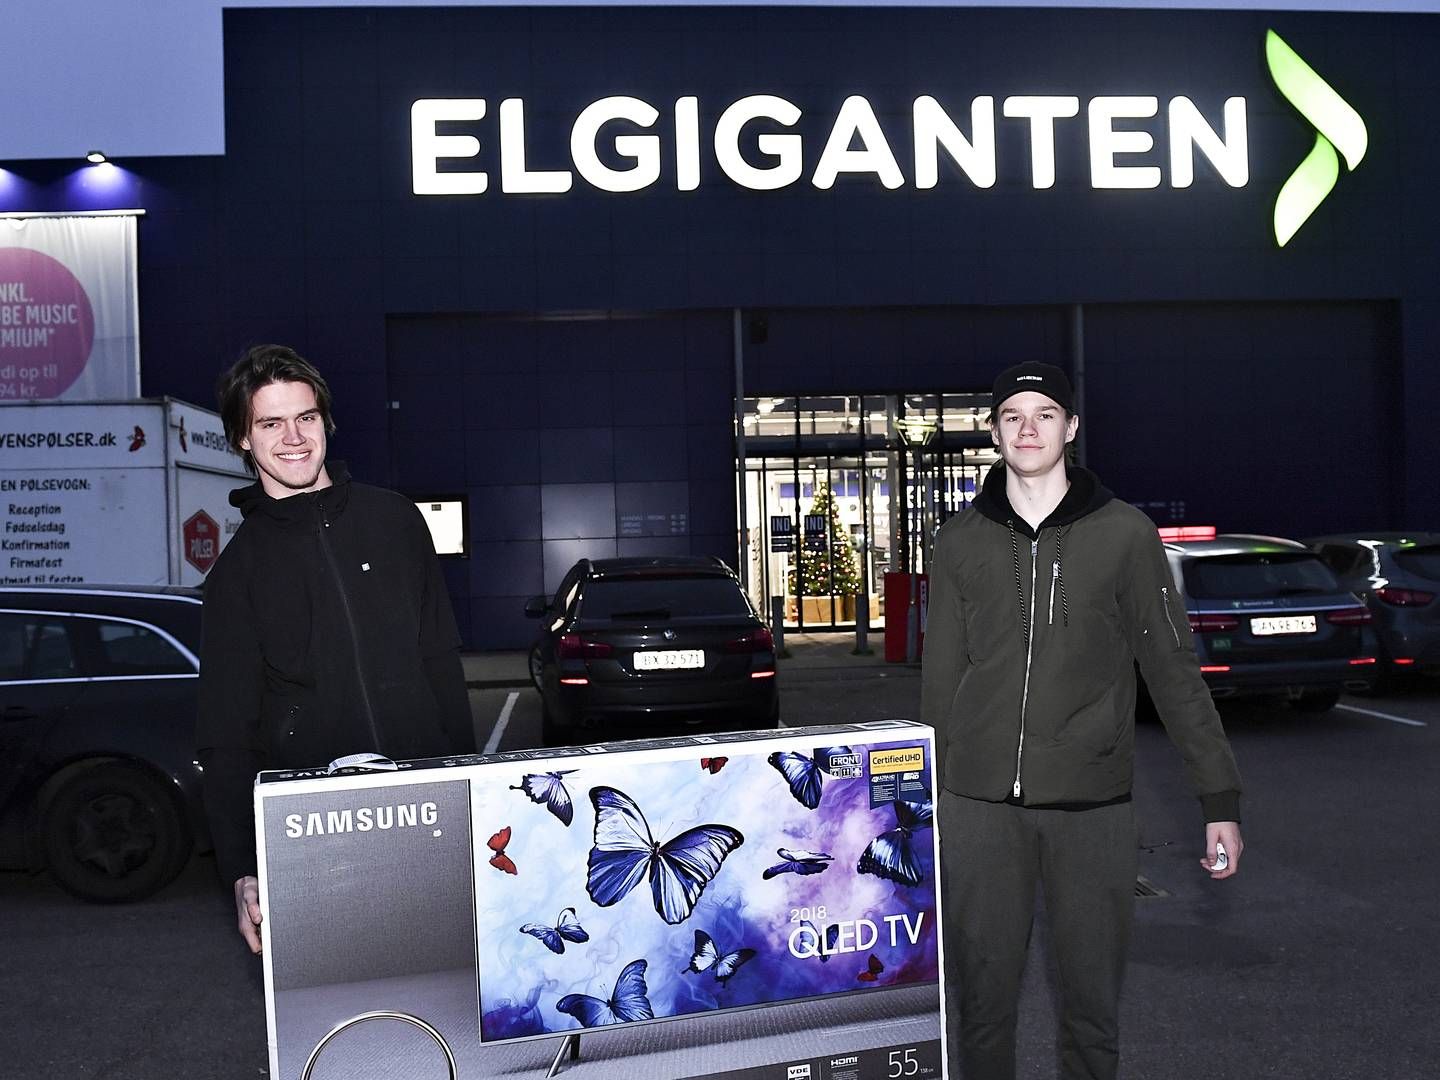 Elkjøb, der ejer Elgiganten i Danmark og Sverige, vil skære 12 pct. af personaleomkostningerne af og lukke "nogle få" butikker i Norge. | Foto: Ernst van Norde